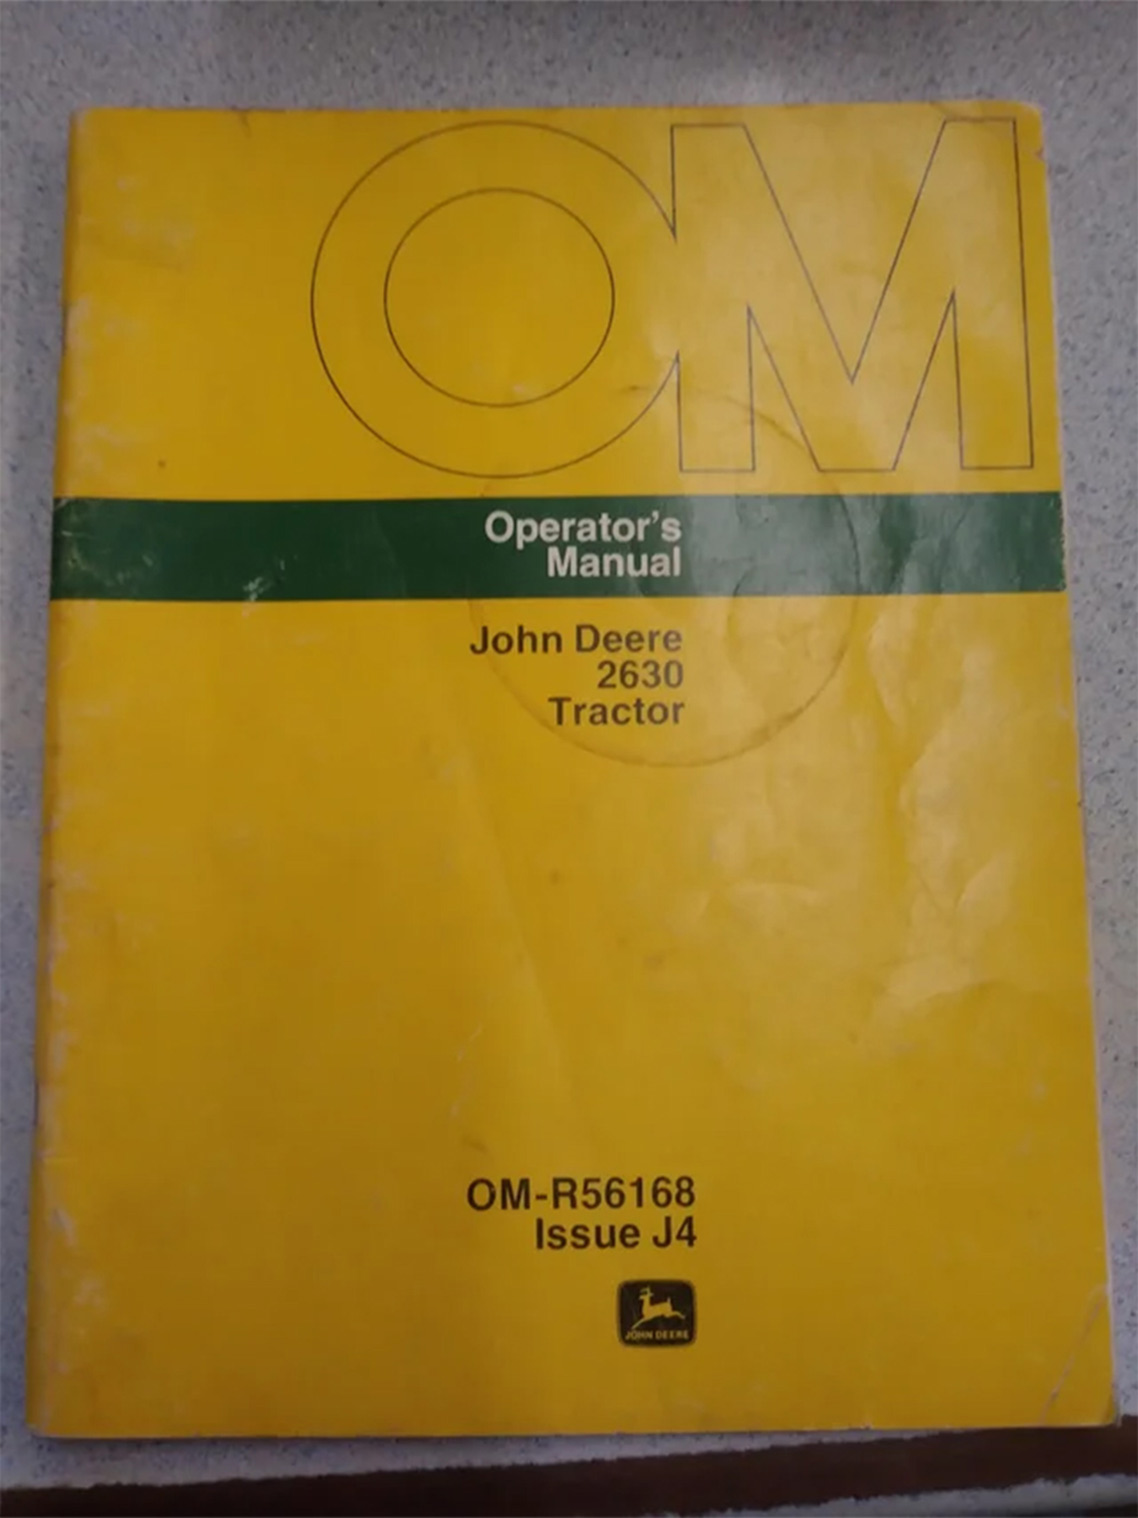 John Deere 2630 Operator's Manual